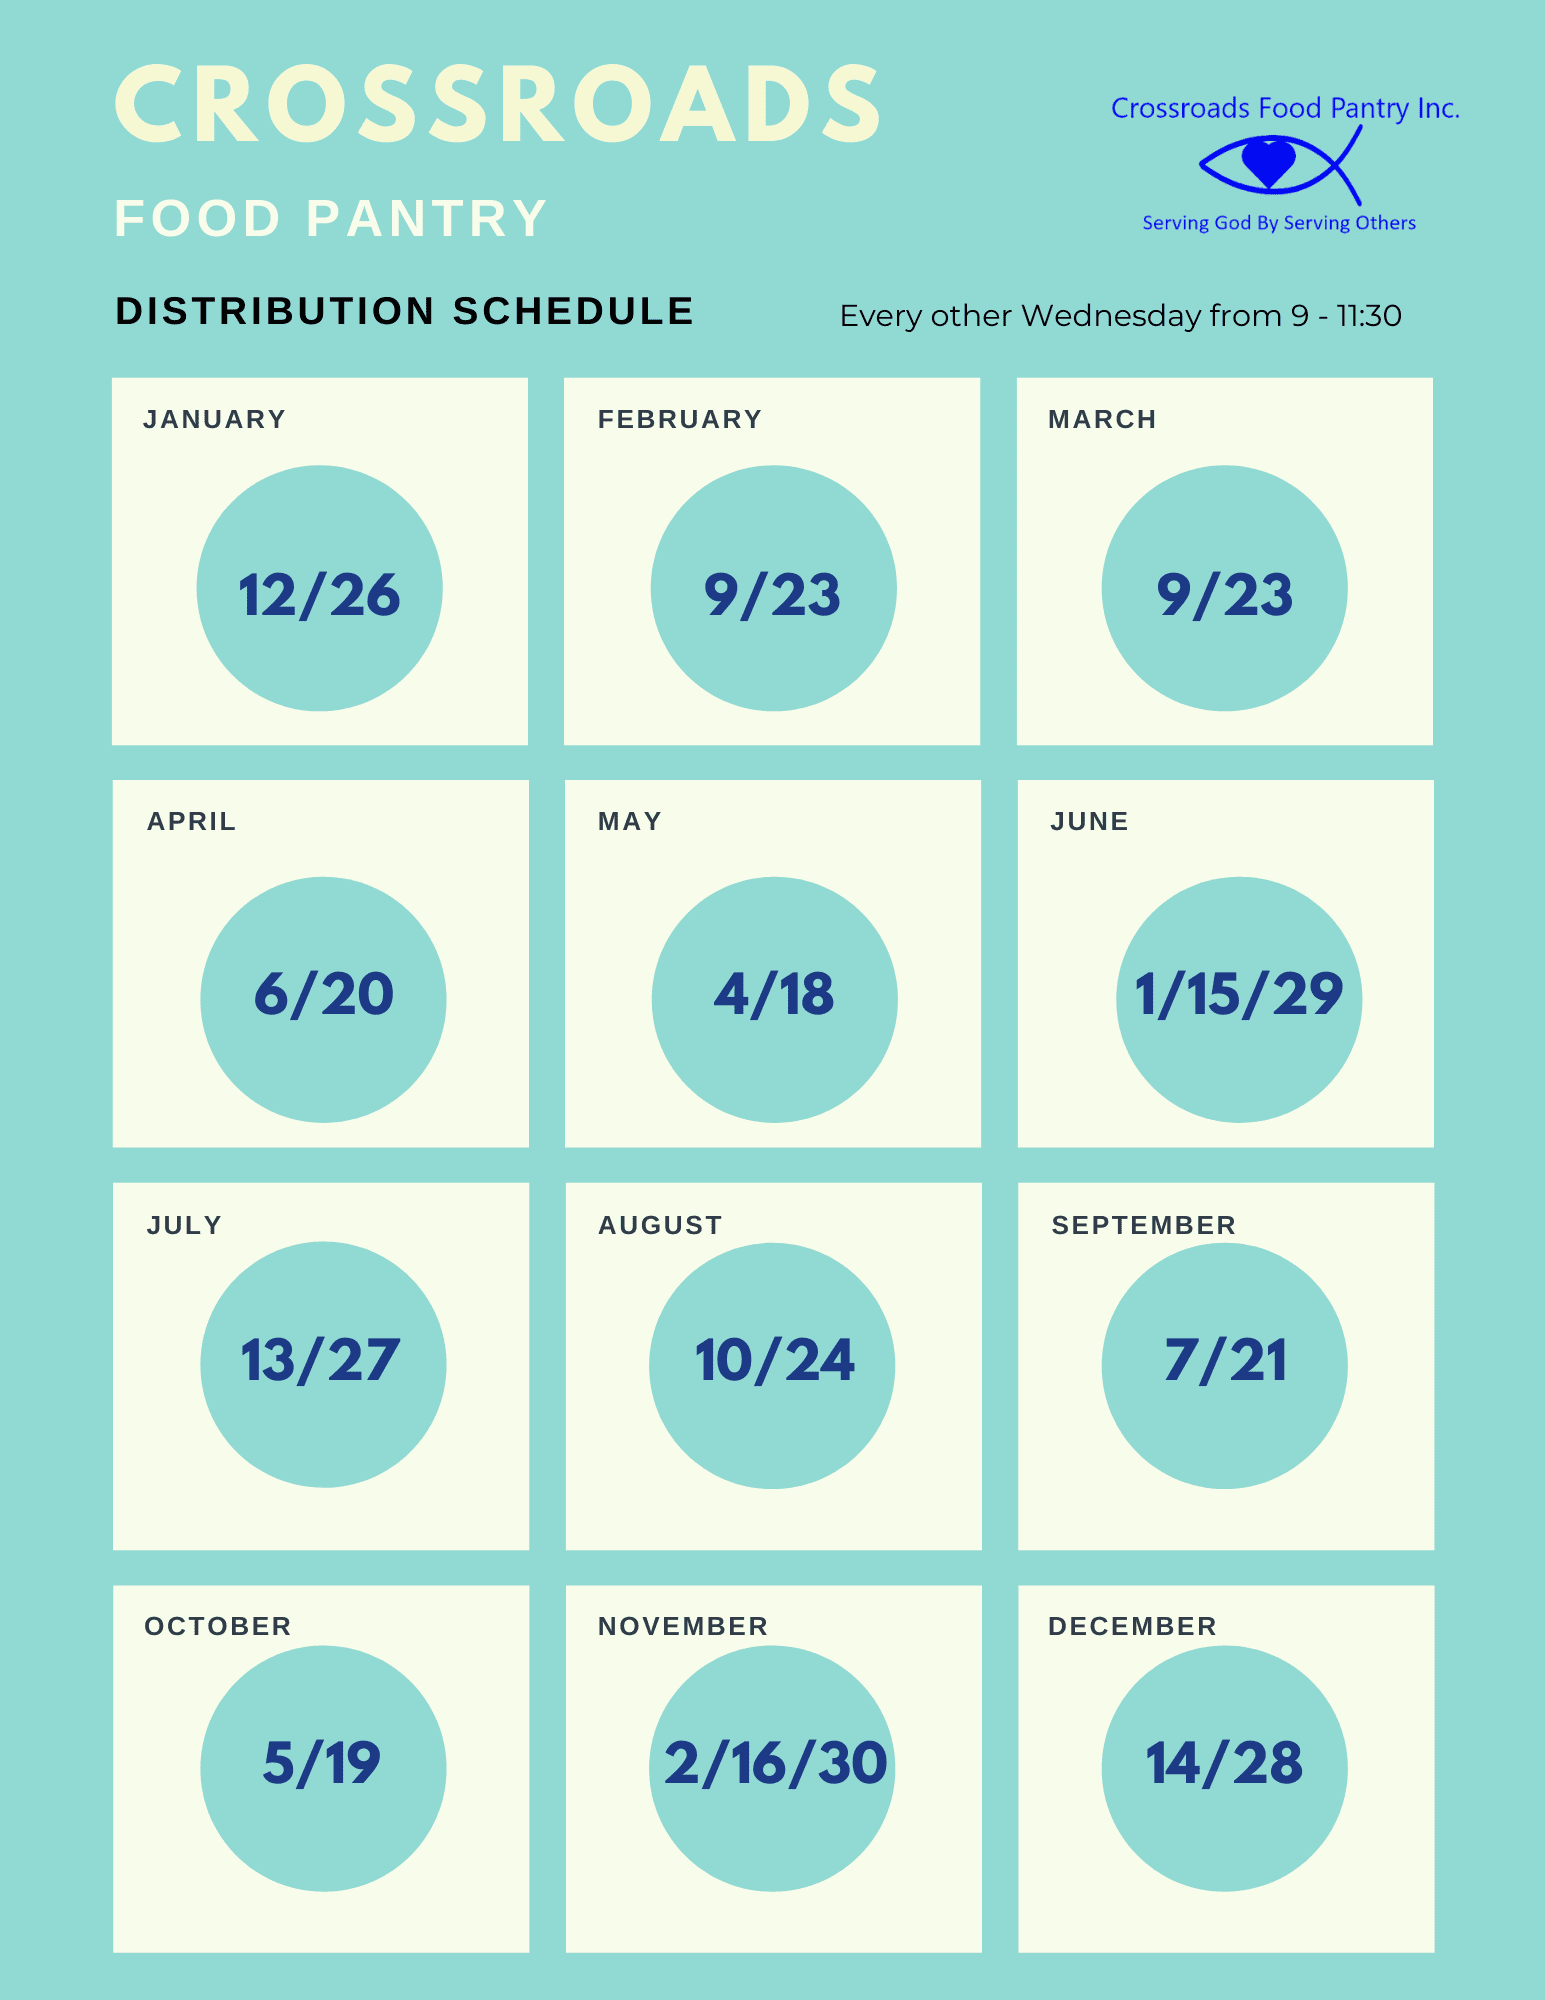 Distribution Schedule